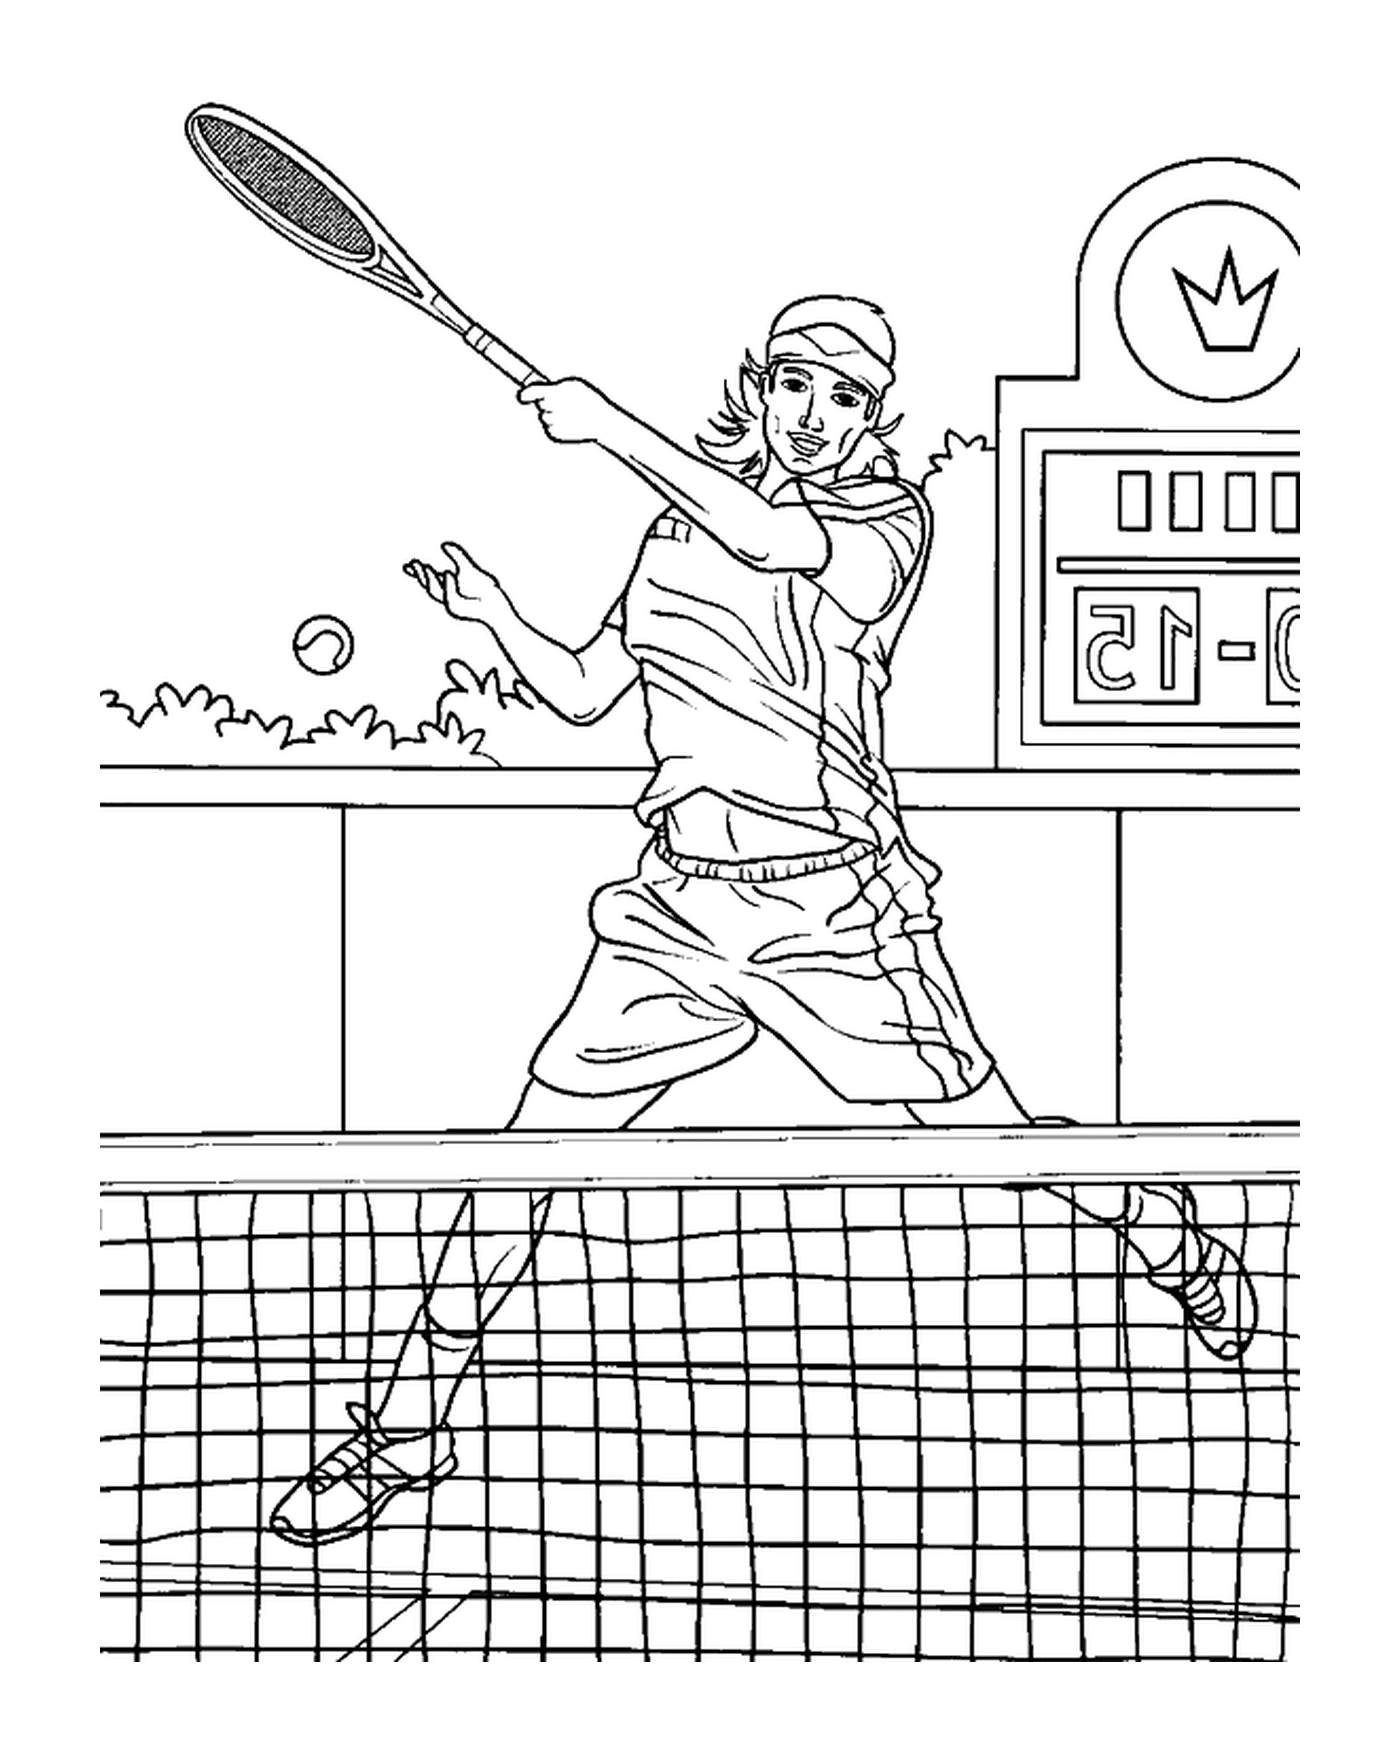  Анимированная теннисная игра 